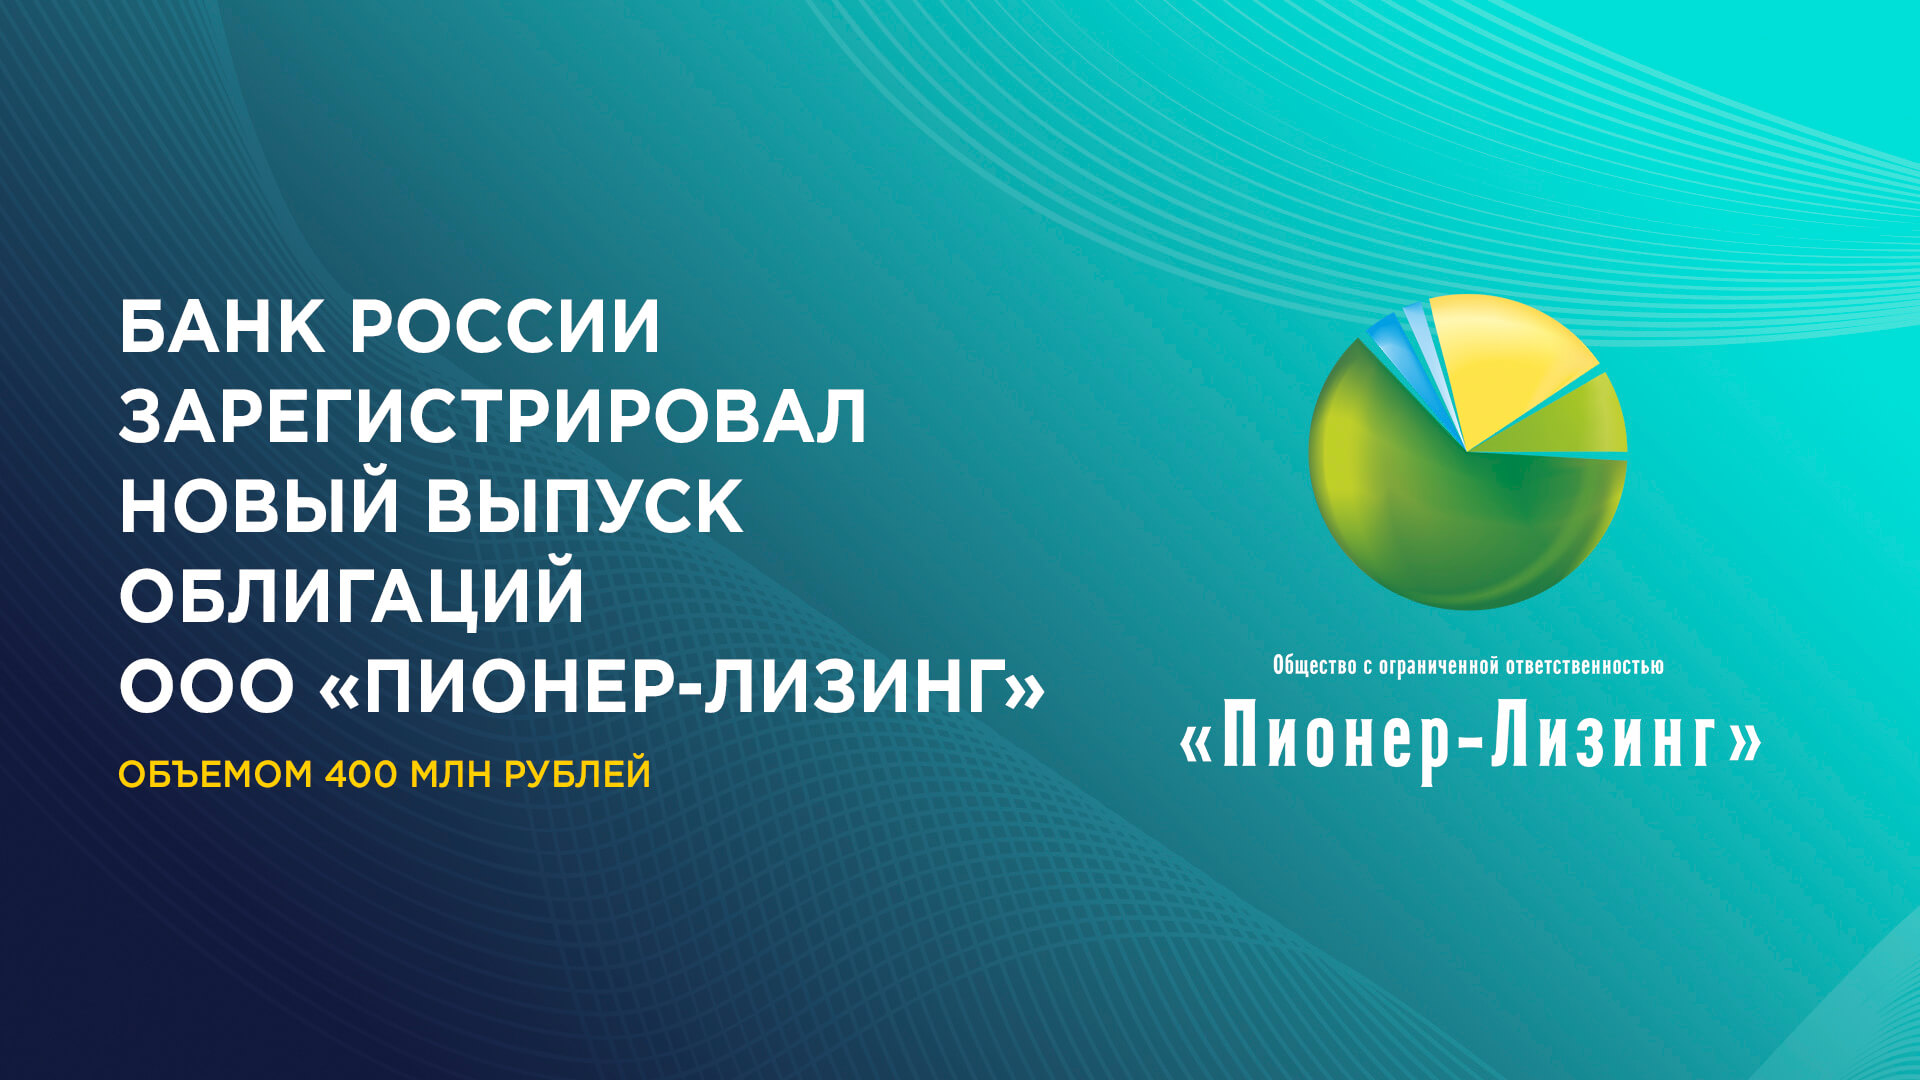 Банк России зарегистрировал новый выпуск облигаций ООО «Пионер-Лизинг» объемом 400 миллионов рублей